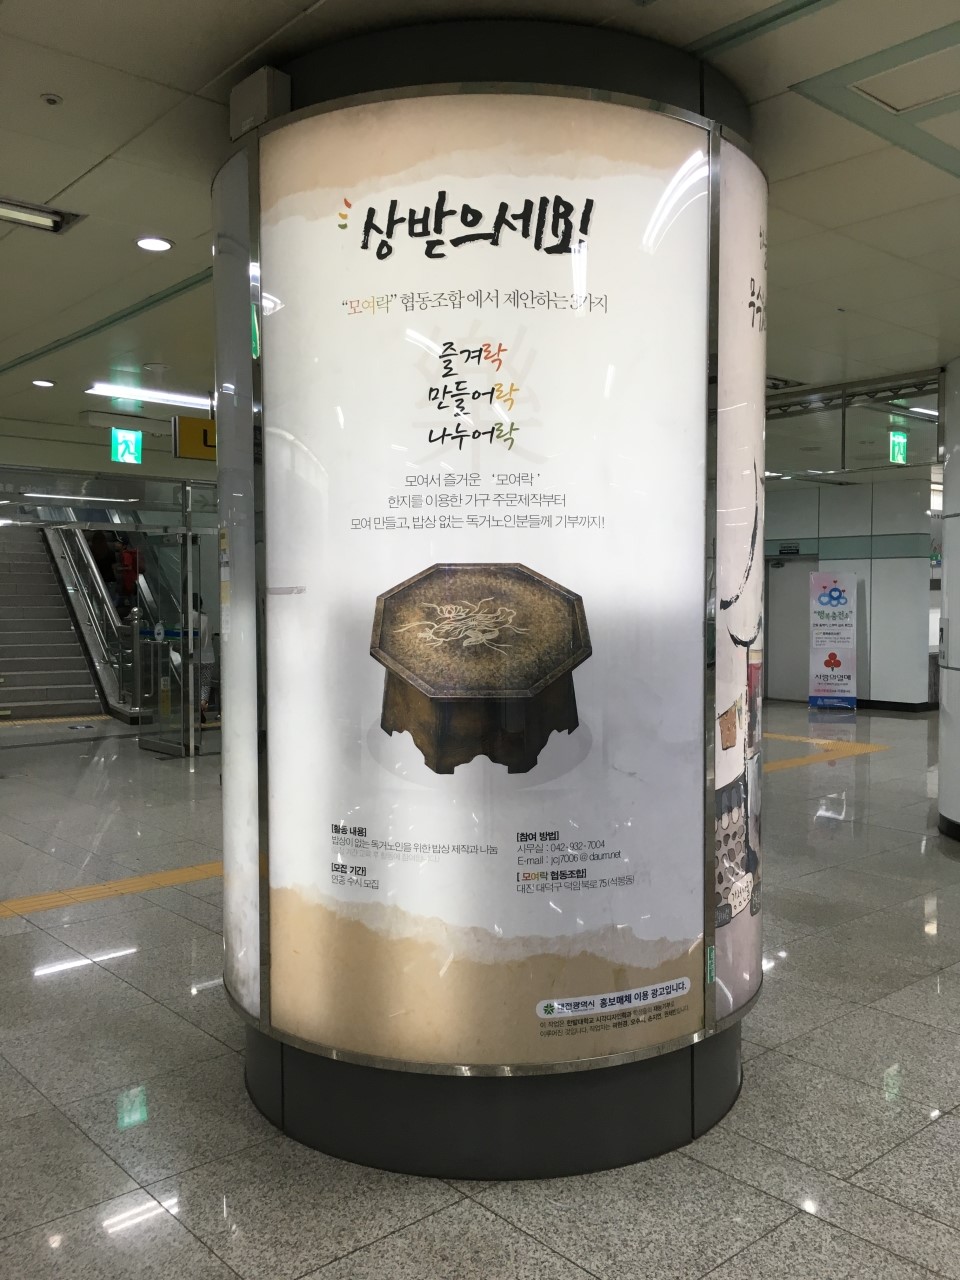 지하철역 광고로 모여락 협동조합의 한지밥상 나눔 프로젝트를 홍보했다.